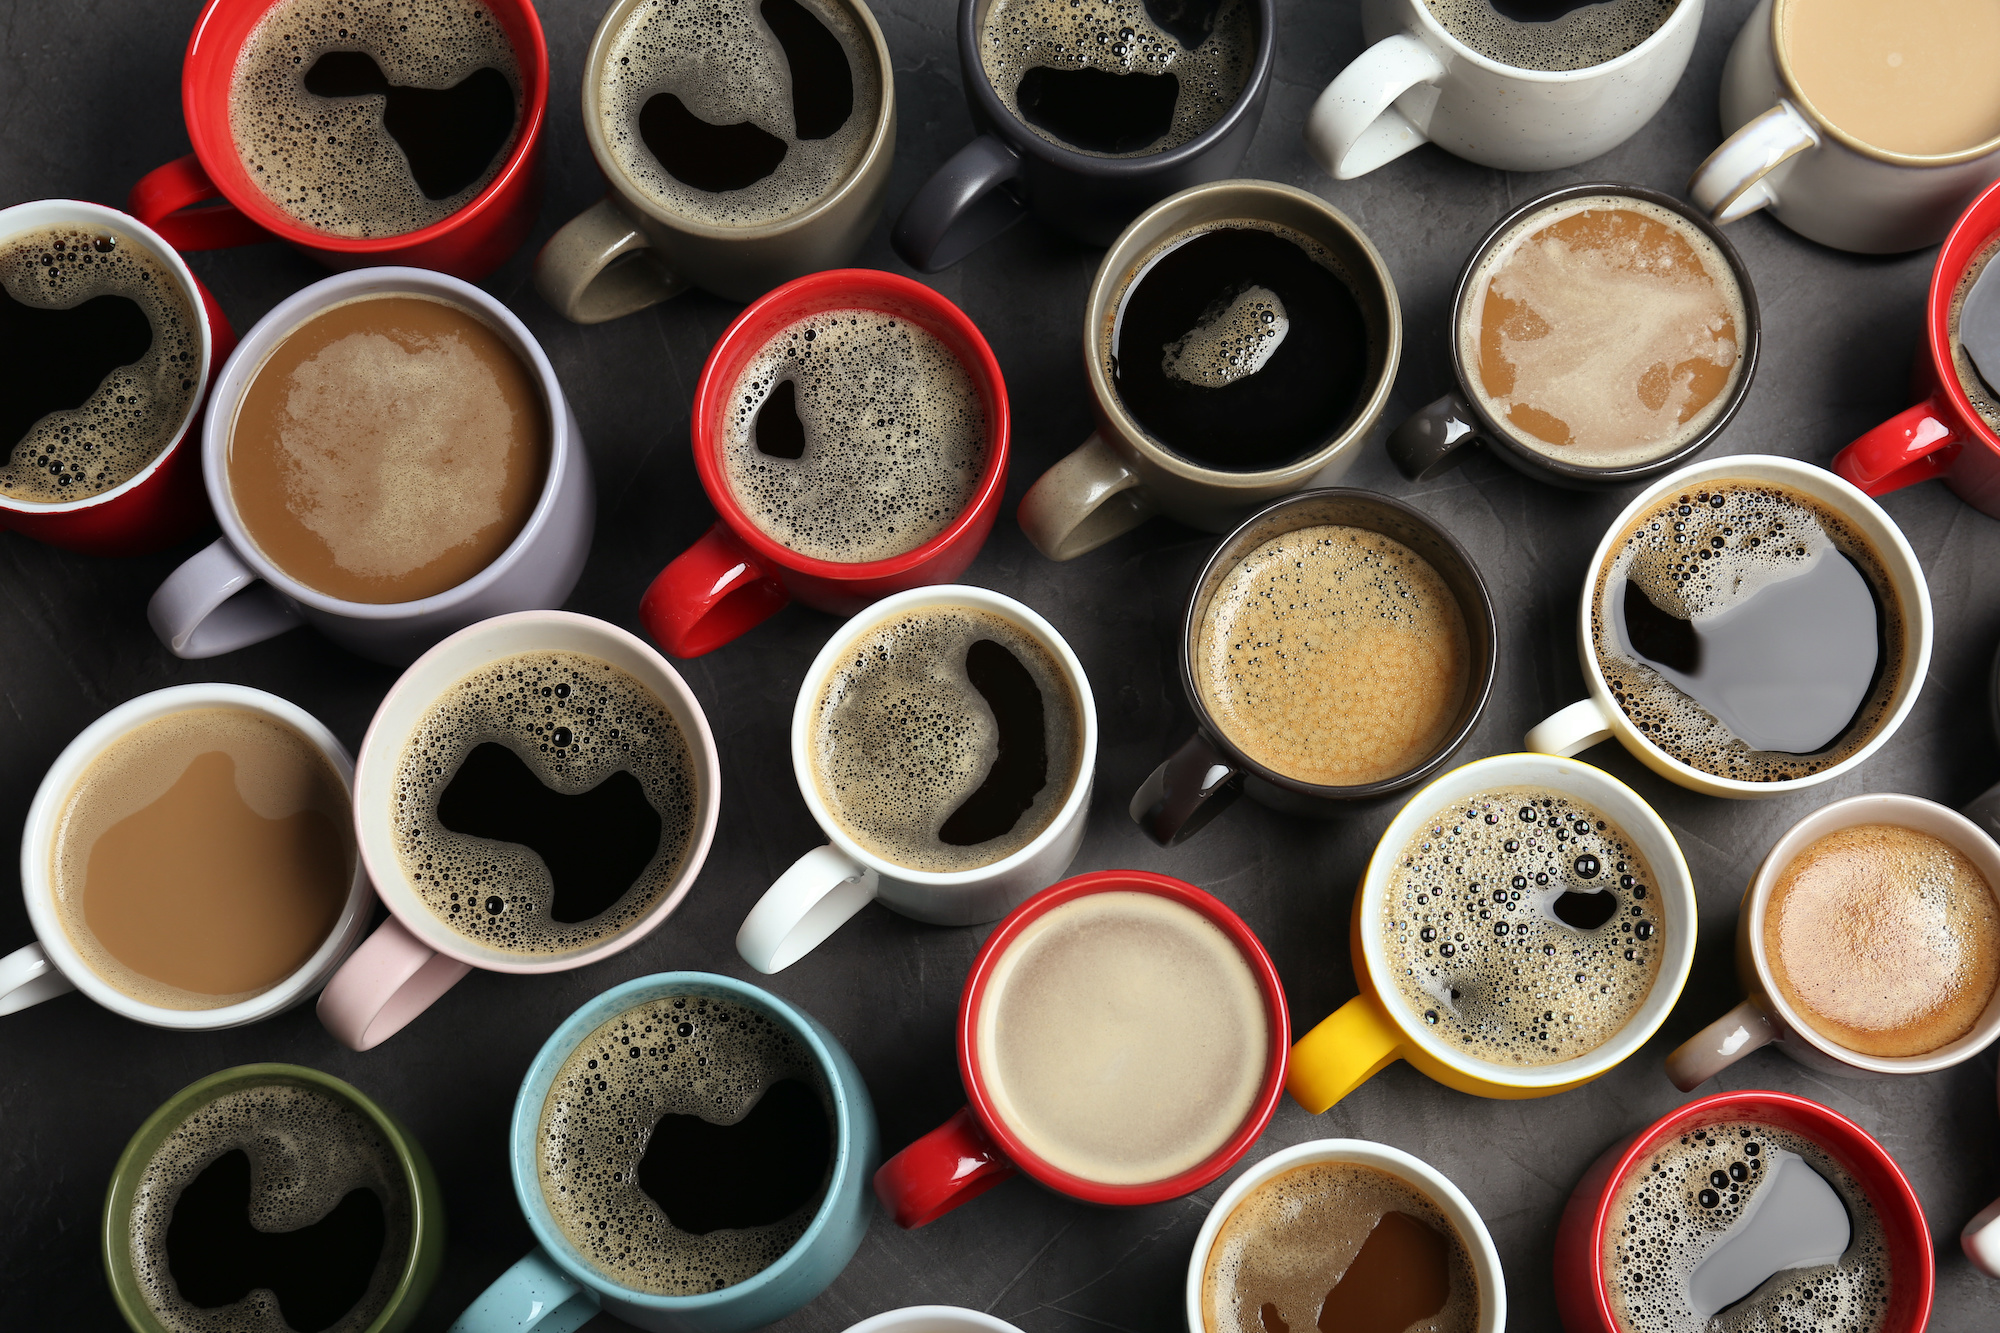 Café lungo, macchiato, ristretto : comment sont préparés tous ces cafés ? © New Africa, Adobe Stock